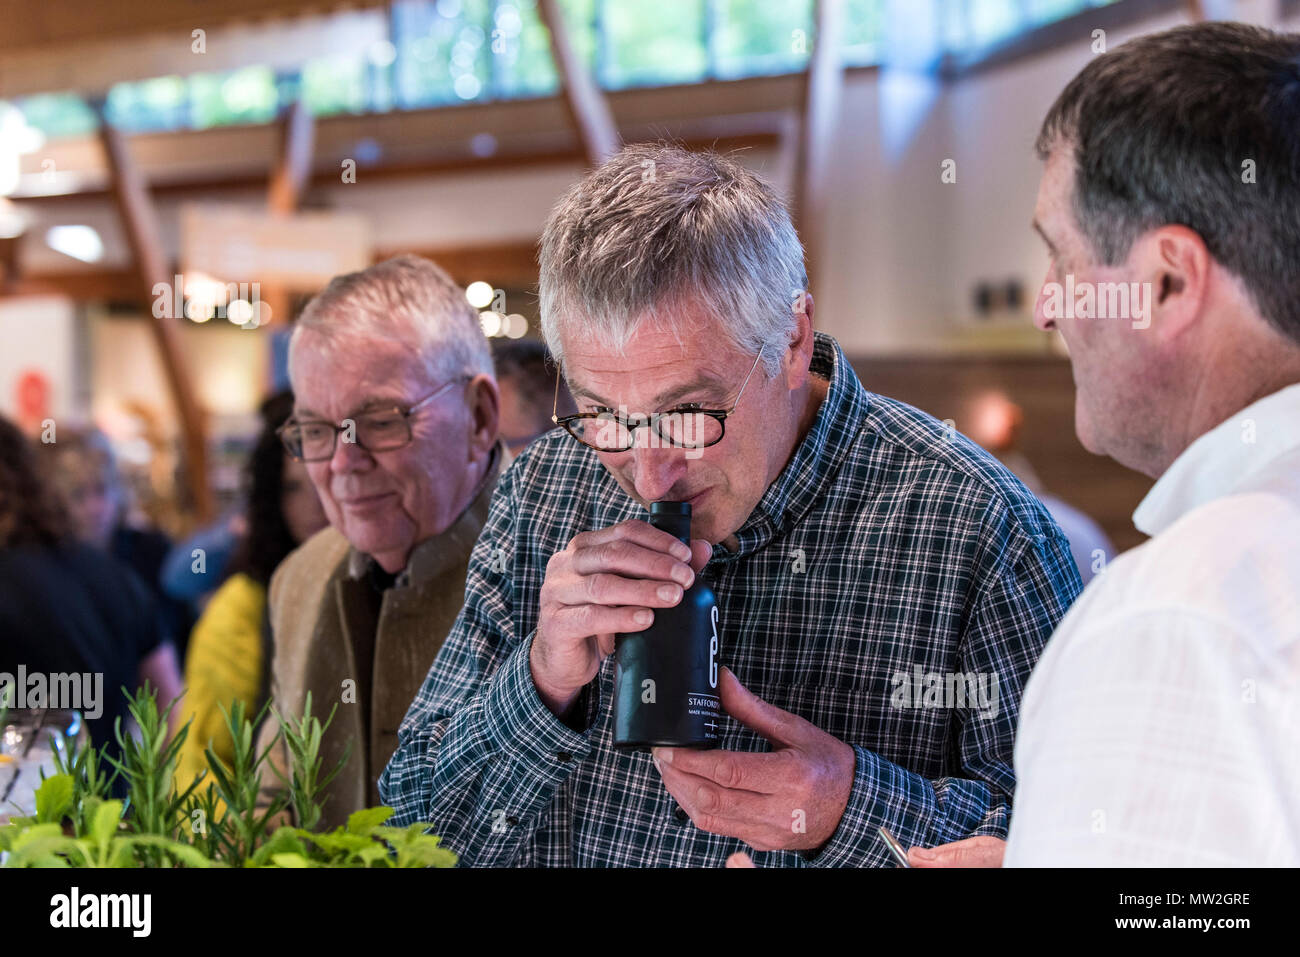 Ein Kunde riechen Stafford Gin's bei einem Gin tasting Event. Stockfoto